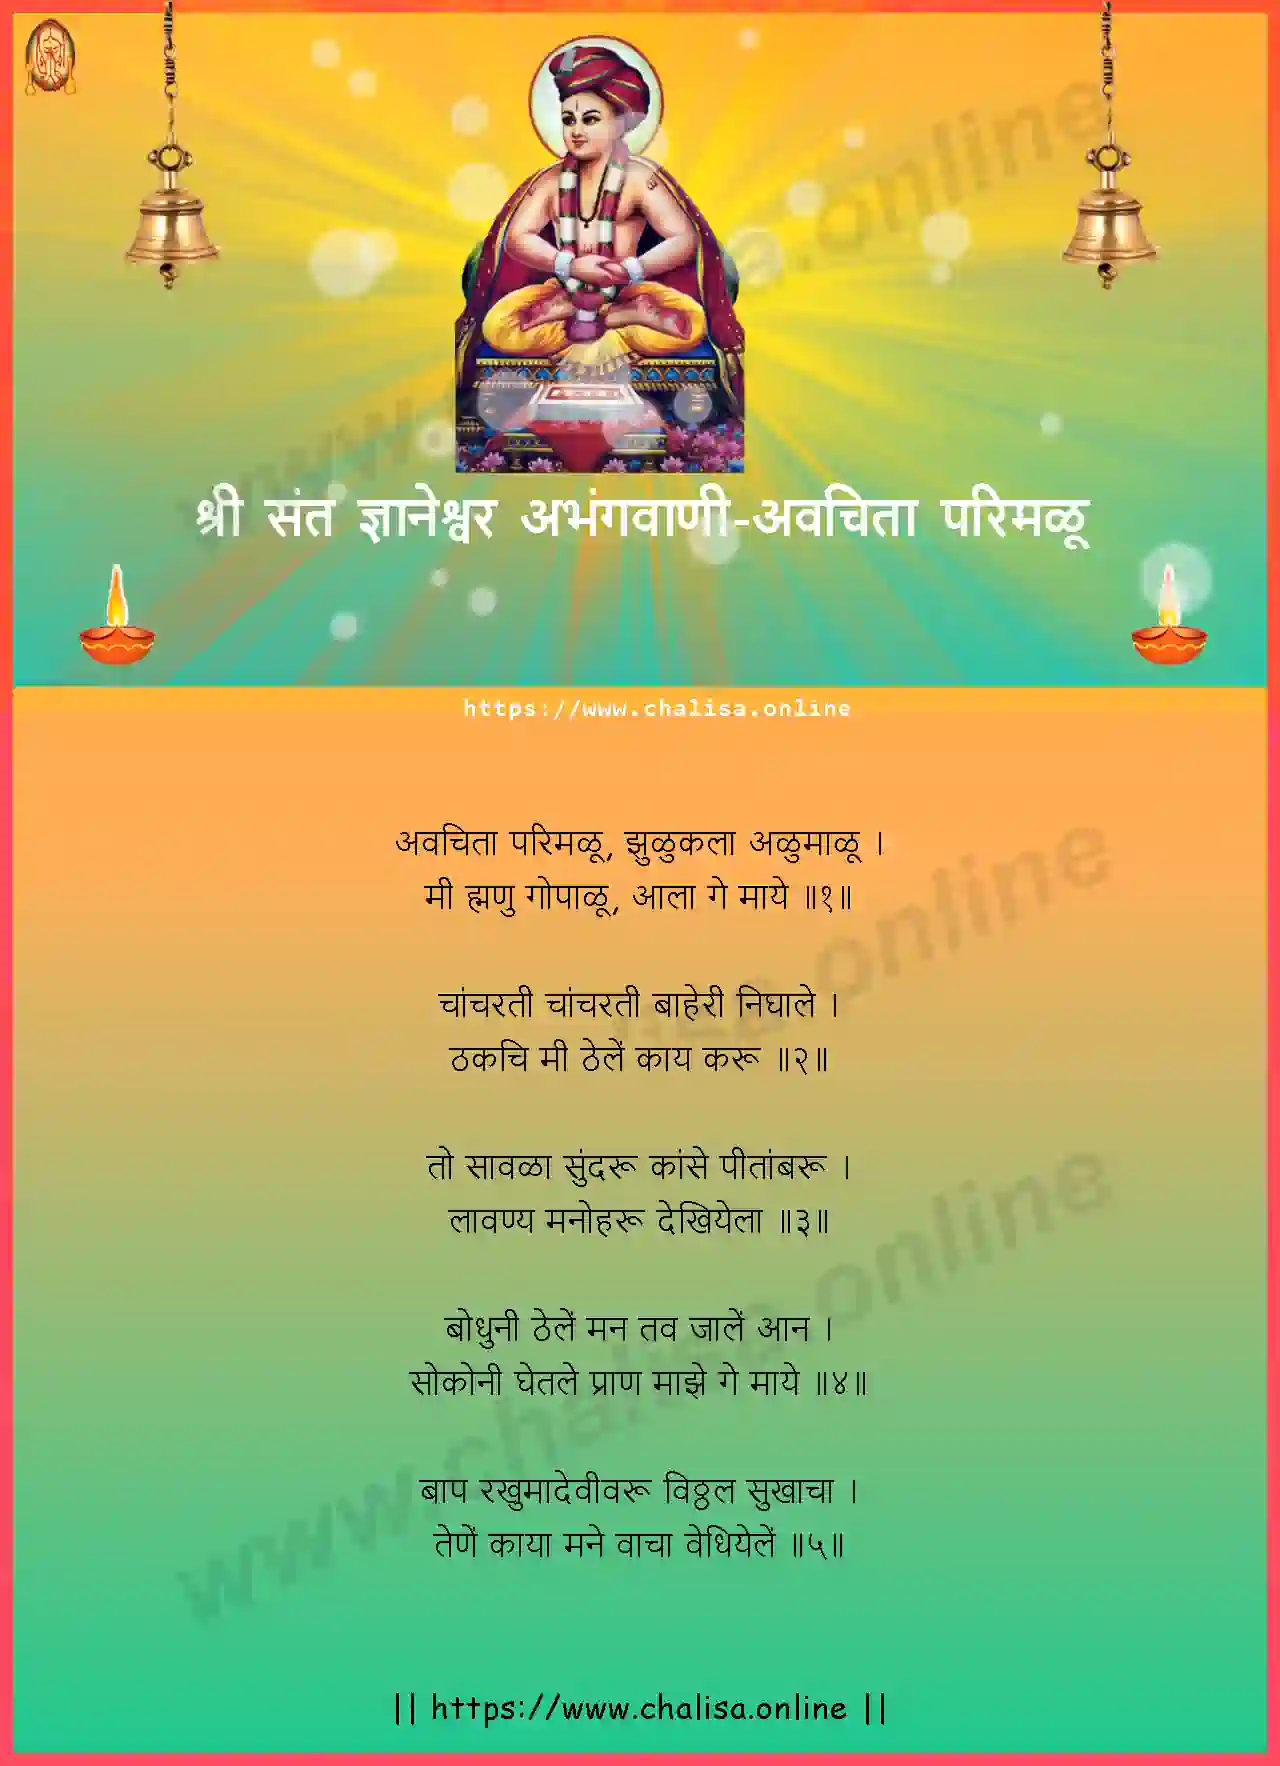 avachita-parimalu-shri-sant-dnyaneshwar-abhang-marathi-lyrics-download